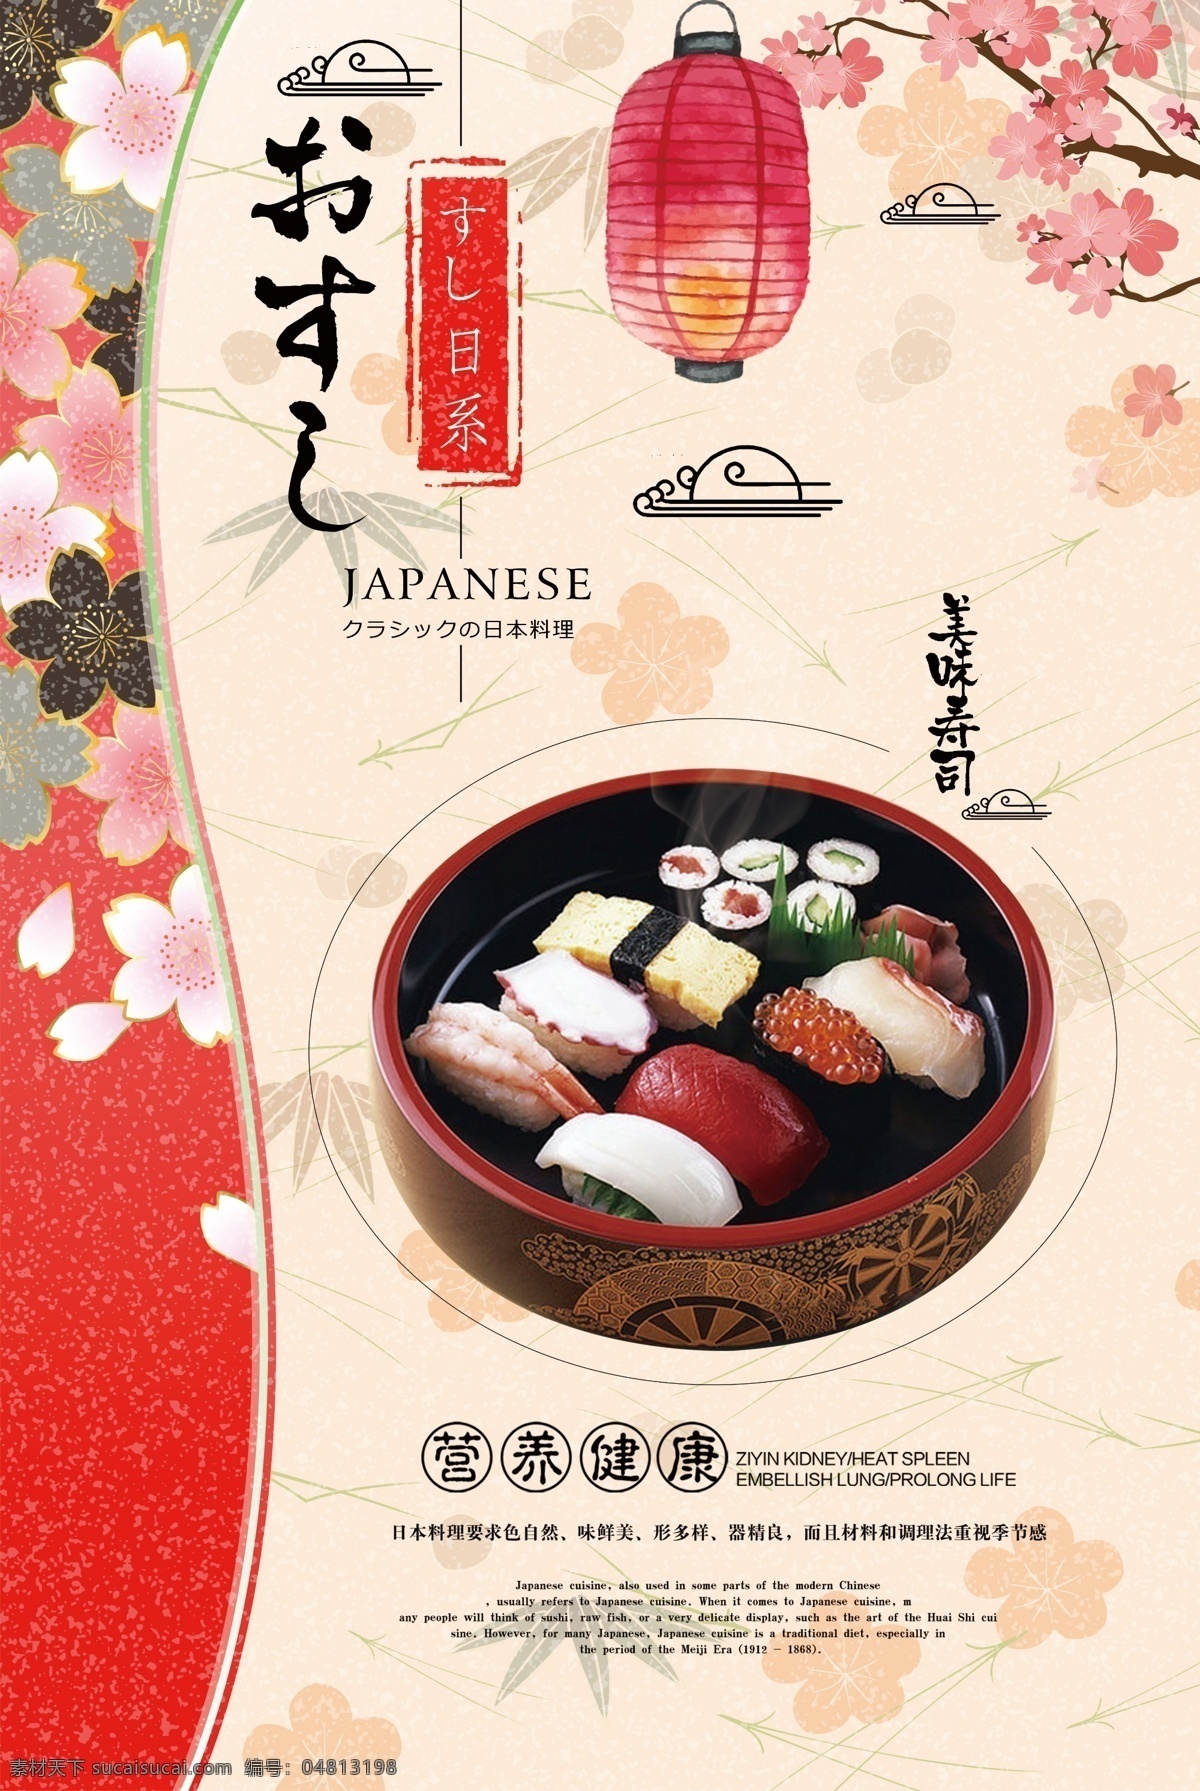 日本 寿司 美食 活动 宣传海报 素材图片 日本寿司 宣传 海报 餐饮美食 类